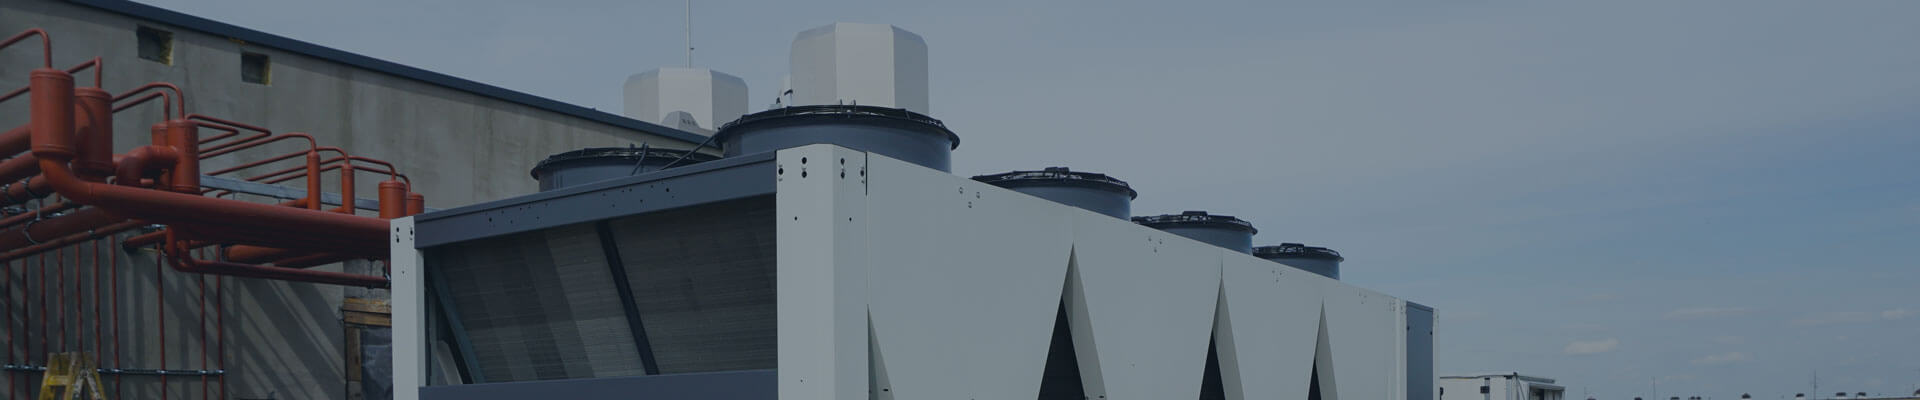 Location d'un refroidisseur industriel sur le toit d'un bâtiment